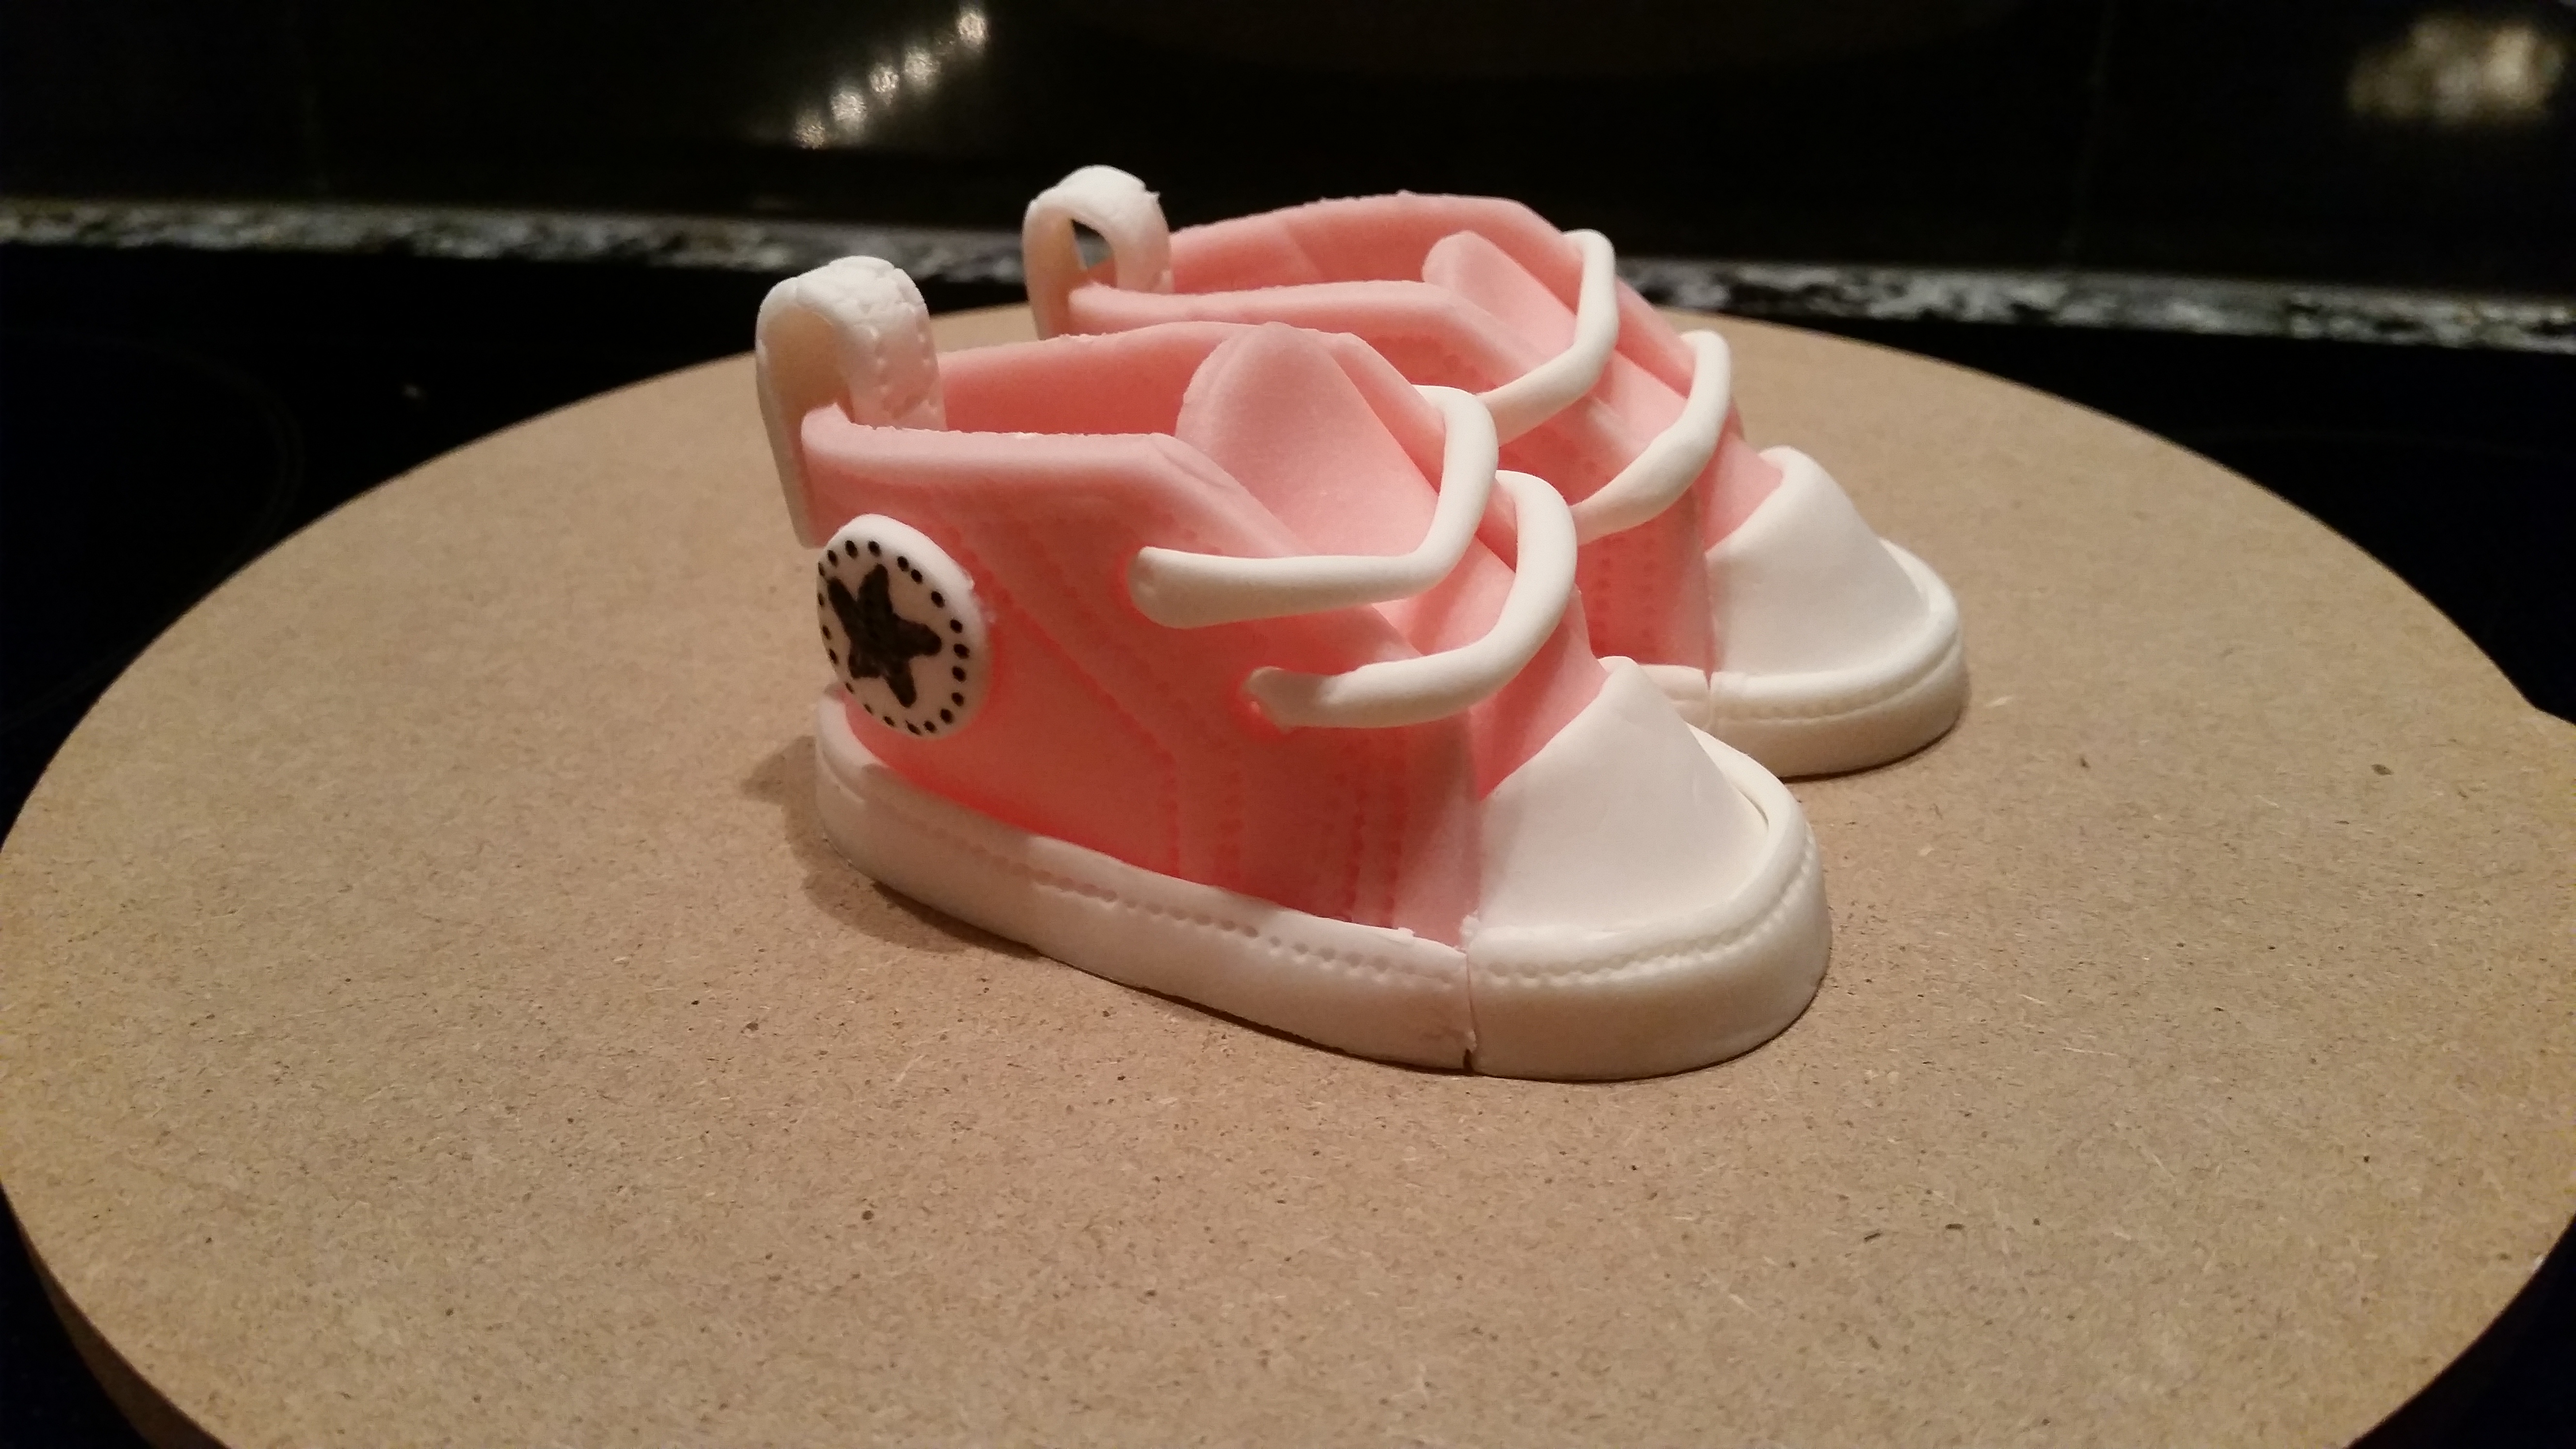 Baby-Schuhe